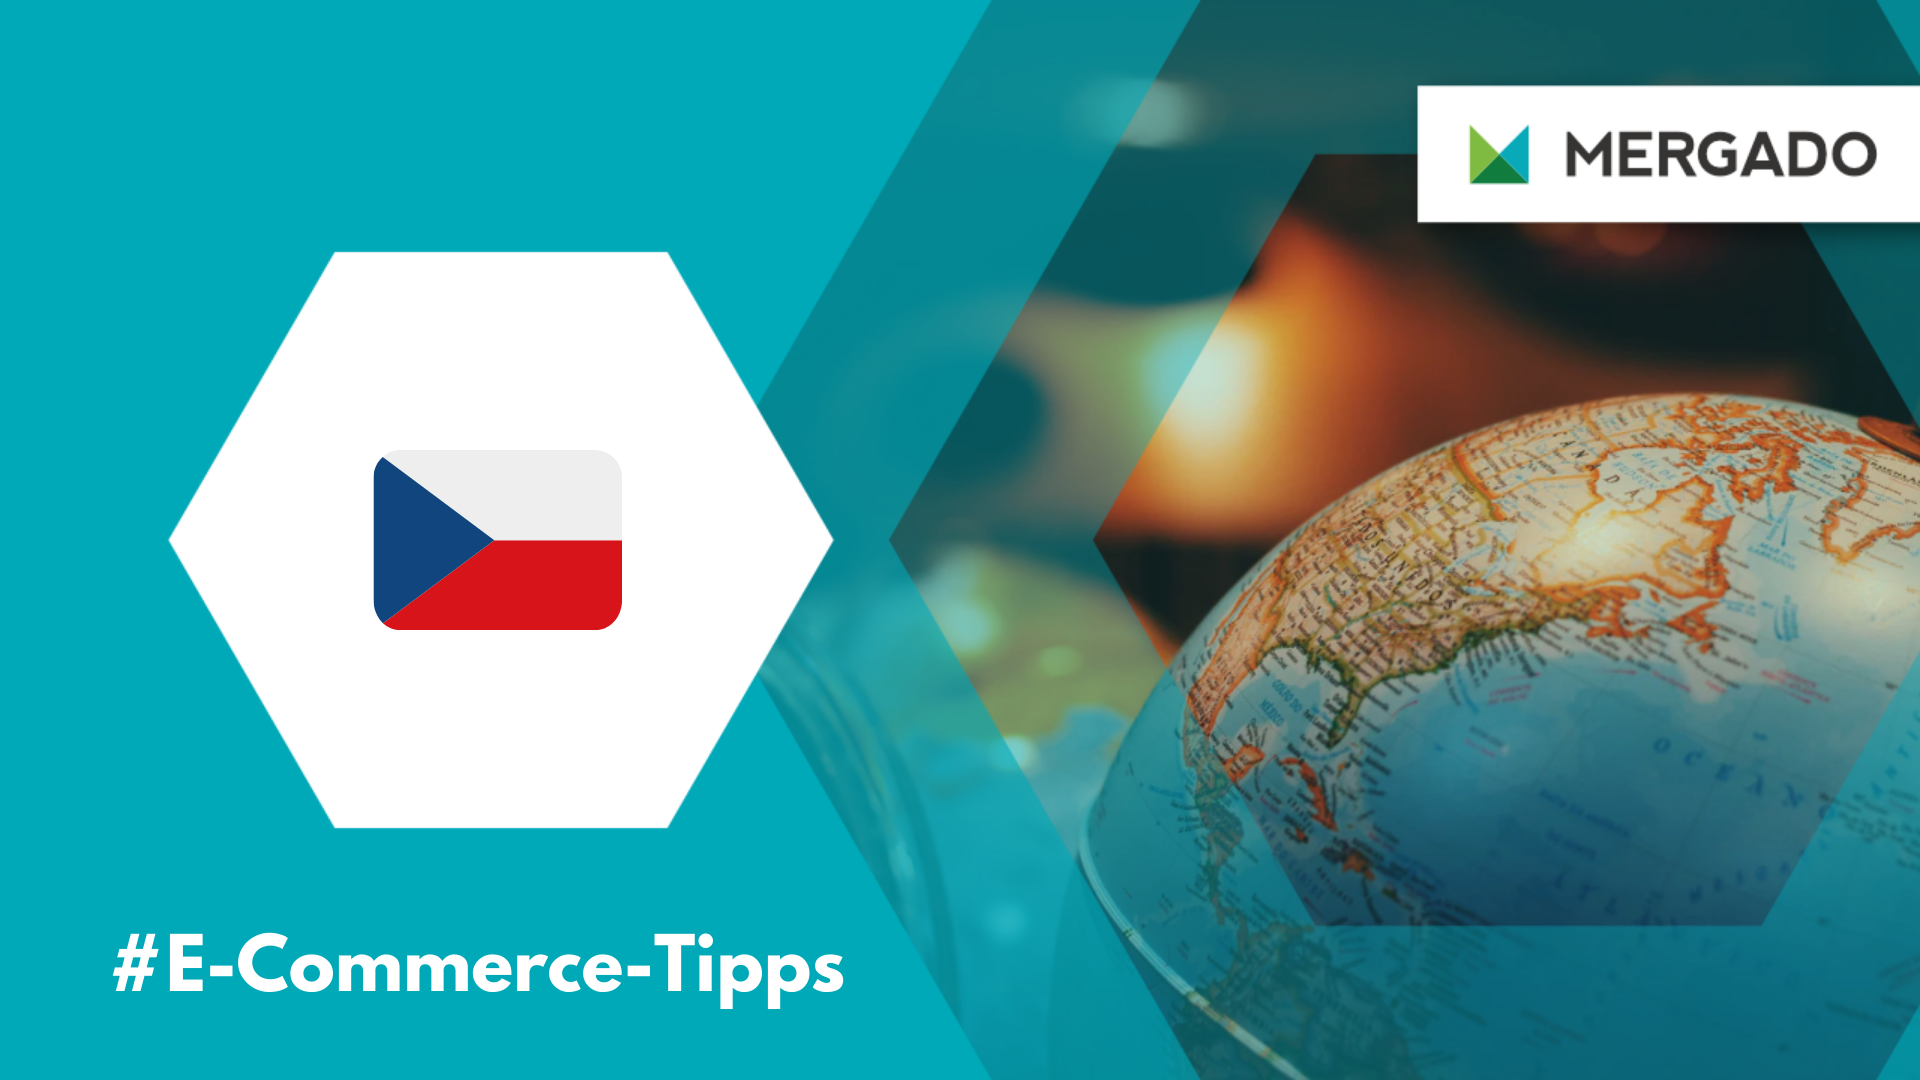 Holen Sie das Beste aus dem tschechischen E-Commerce heraus. Er bietet ein fortschrittliches Umfeld und viele Möglichkeiten